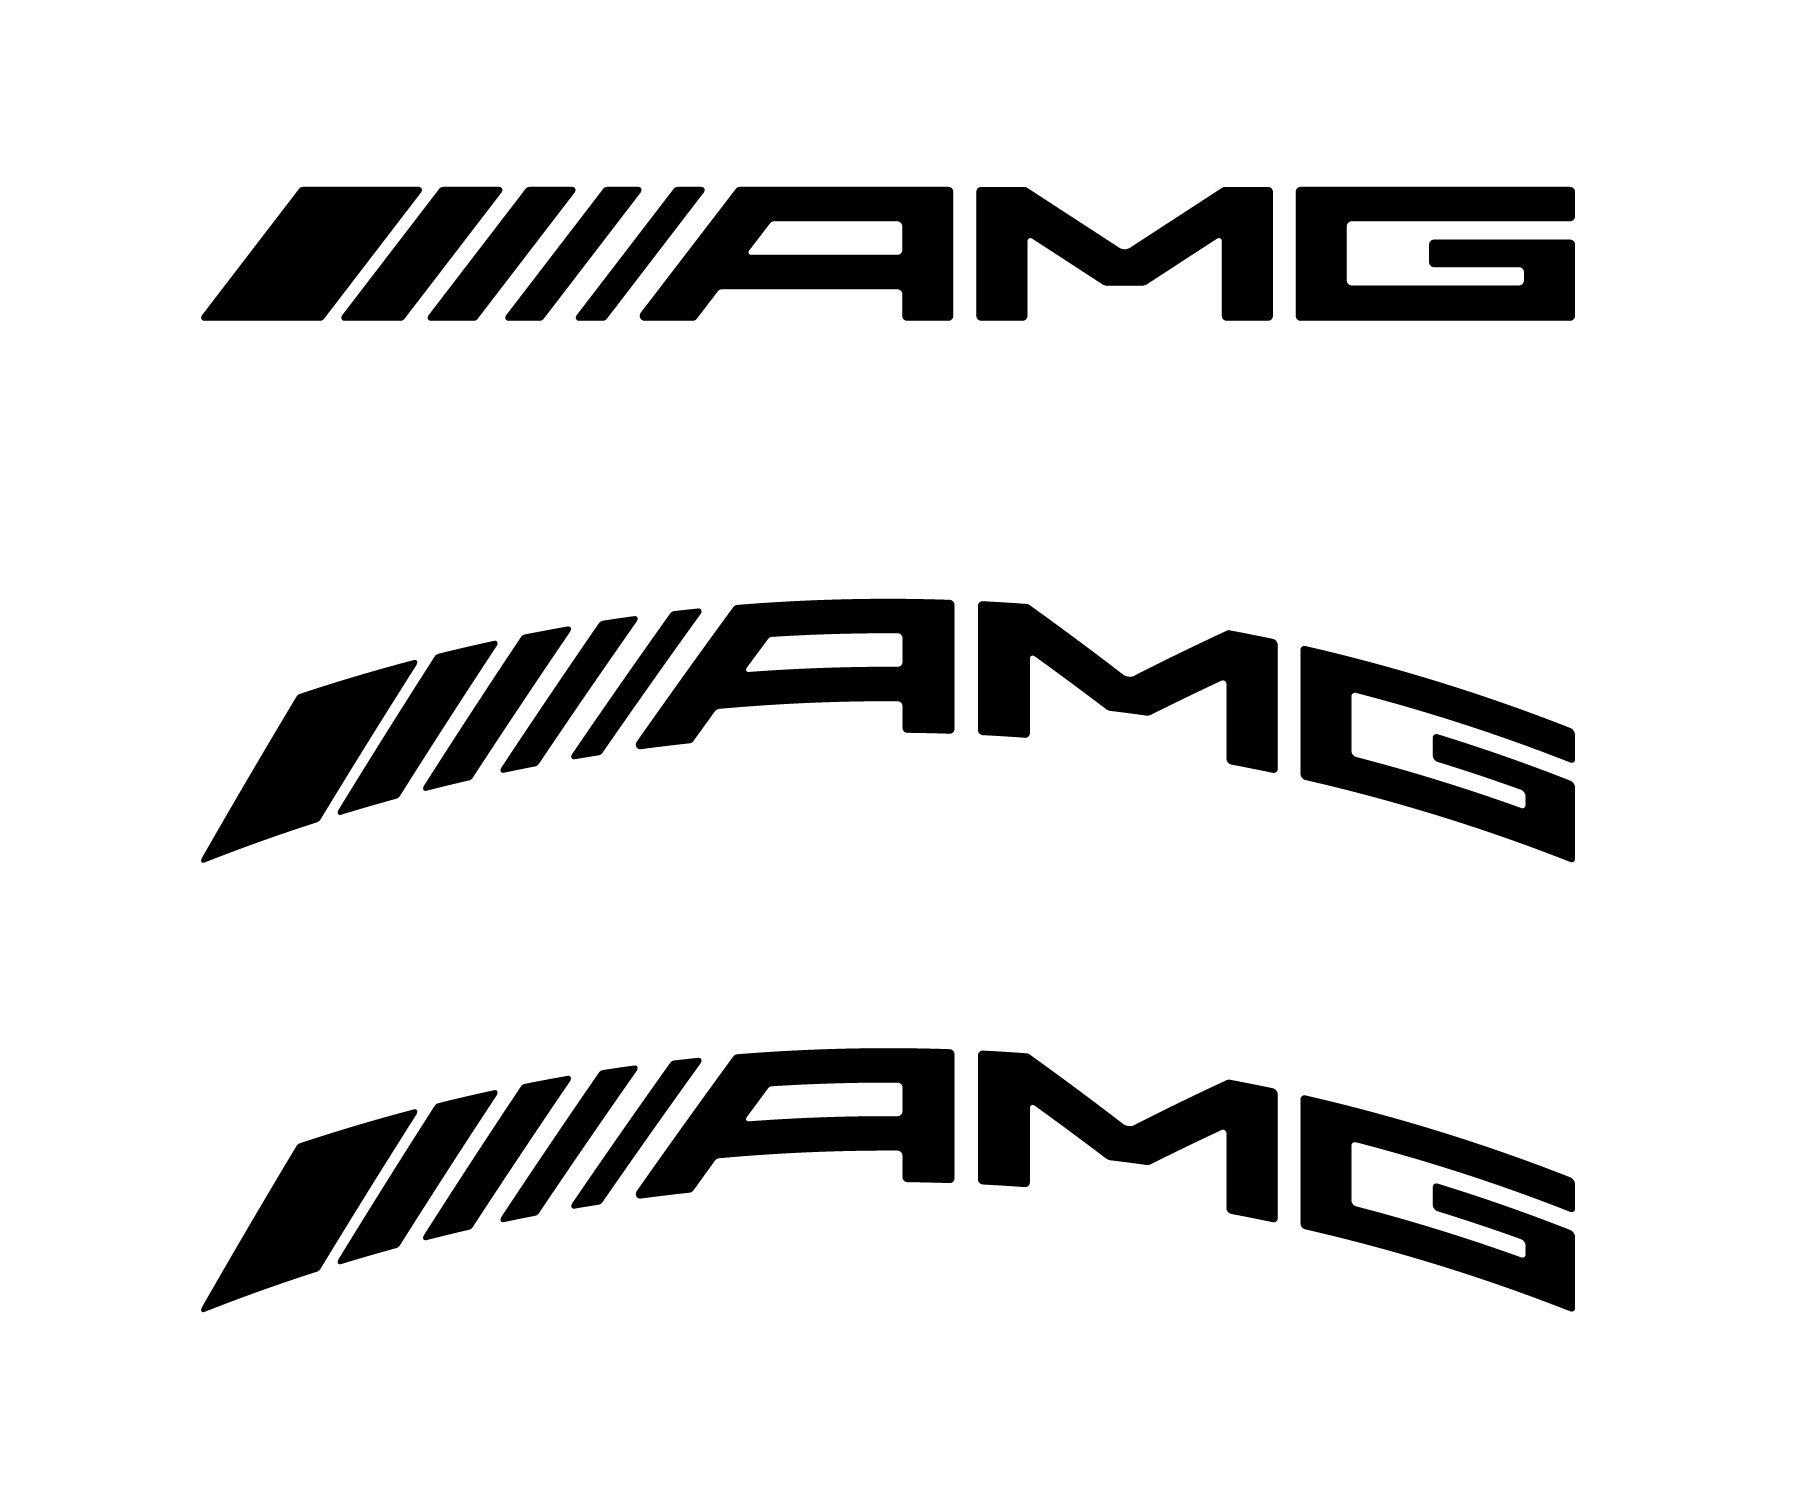 Caliper Logo - Revised AMG Curved Brake Caliper Decal: Feedback Please - MBWorld ...